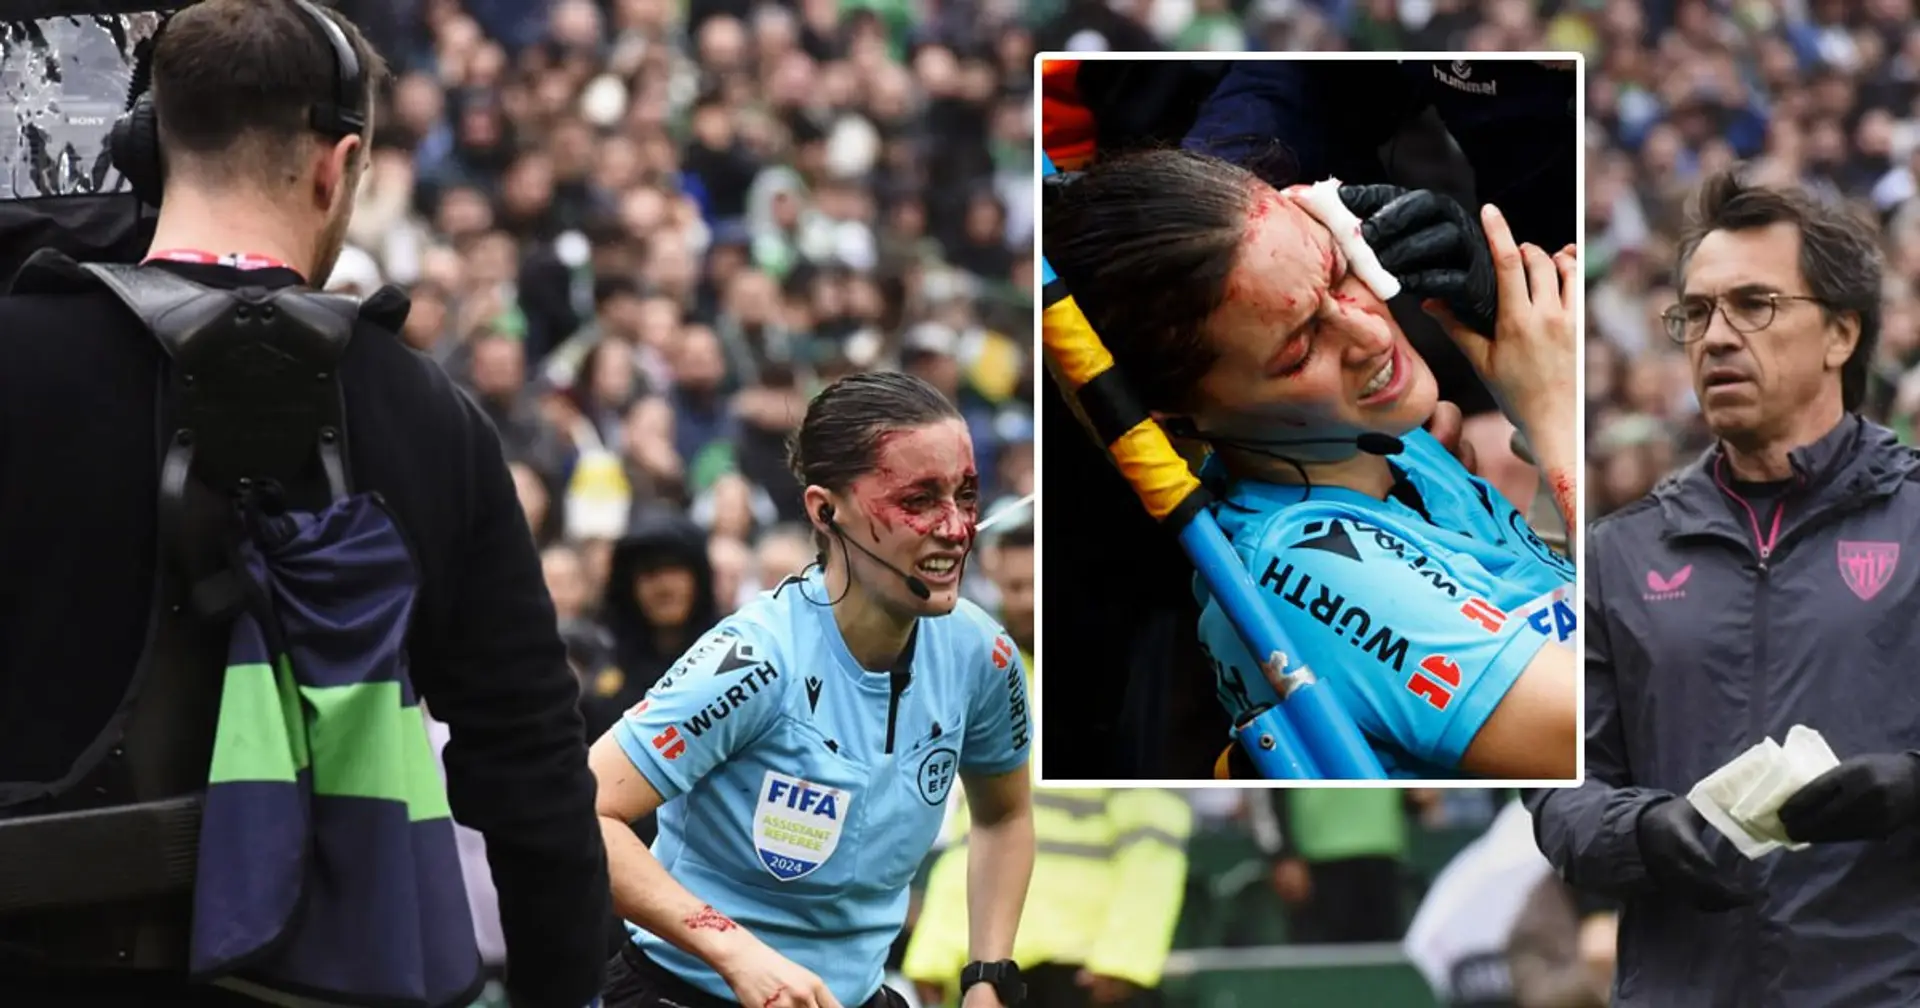 Schrecklicher Zwischenfall in La Liga: Schiedsrichterin wurde auf einer Trage vom Platz getragen und musste ins Krankenhaus